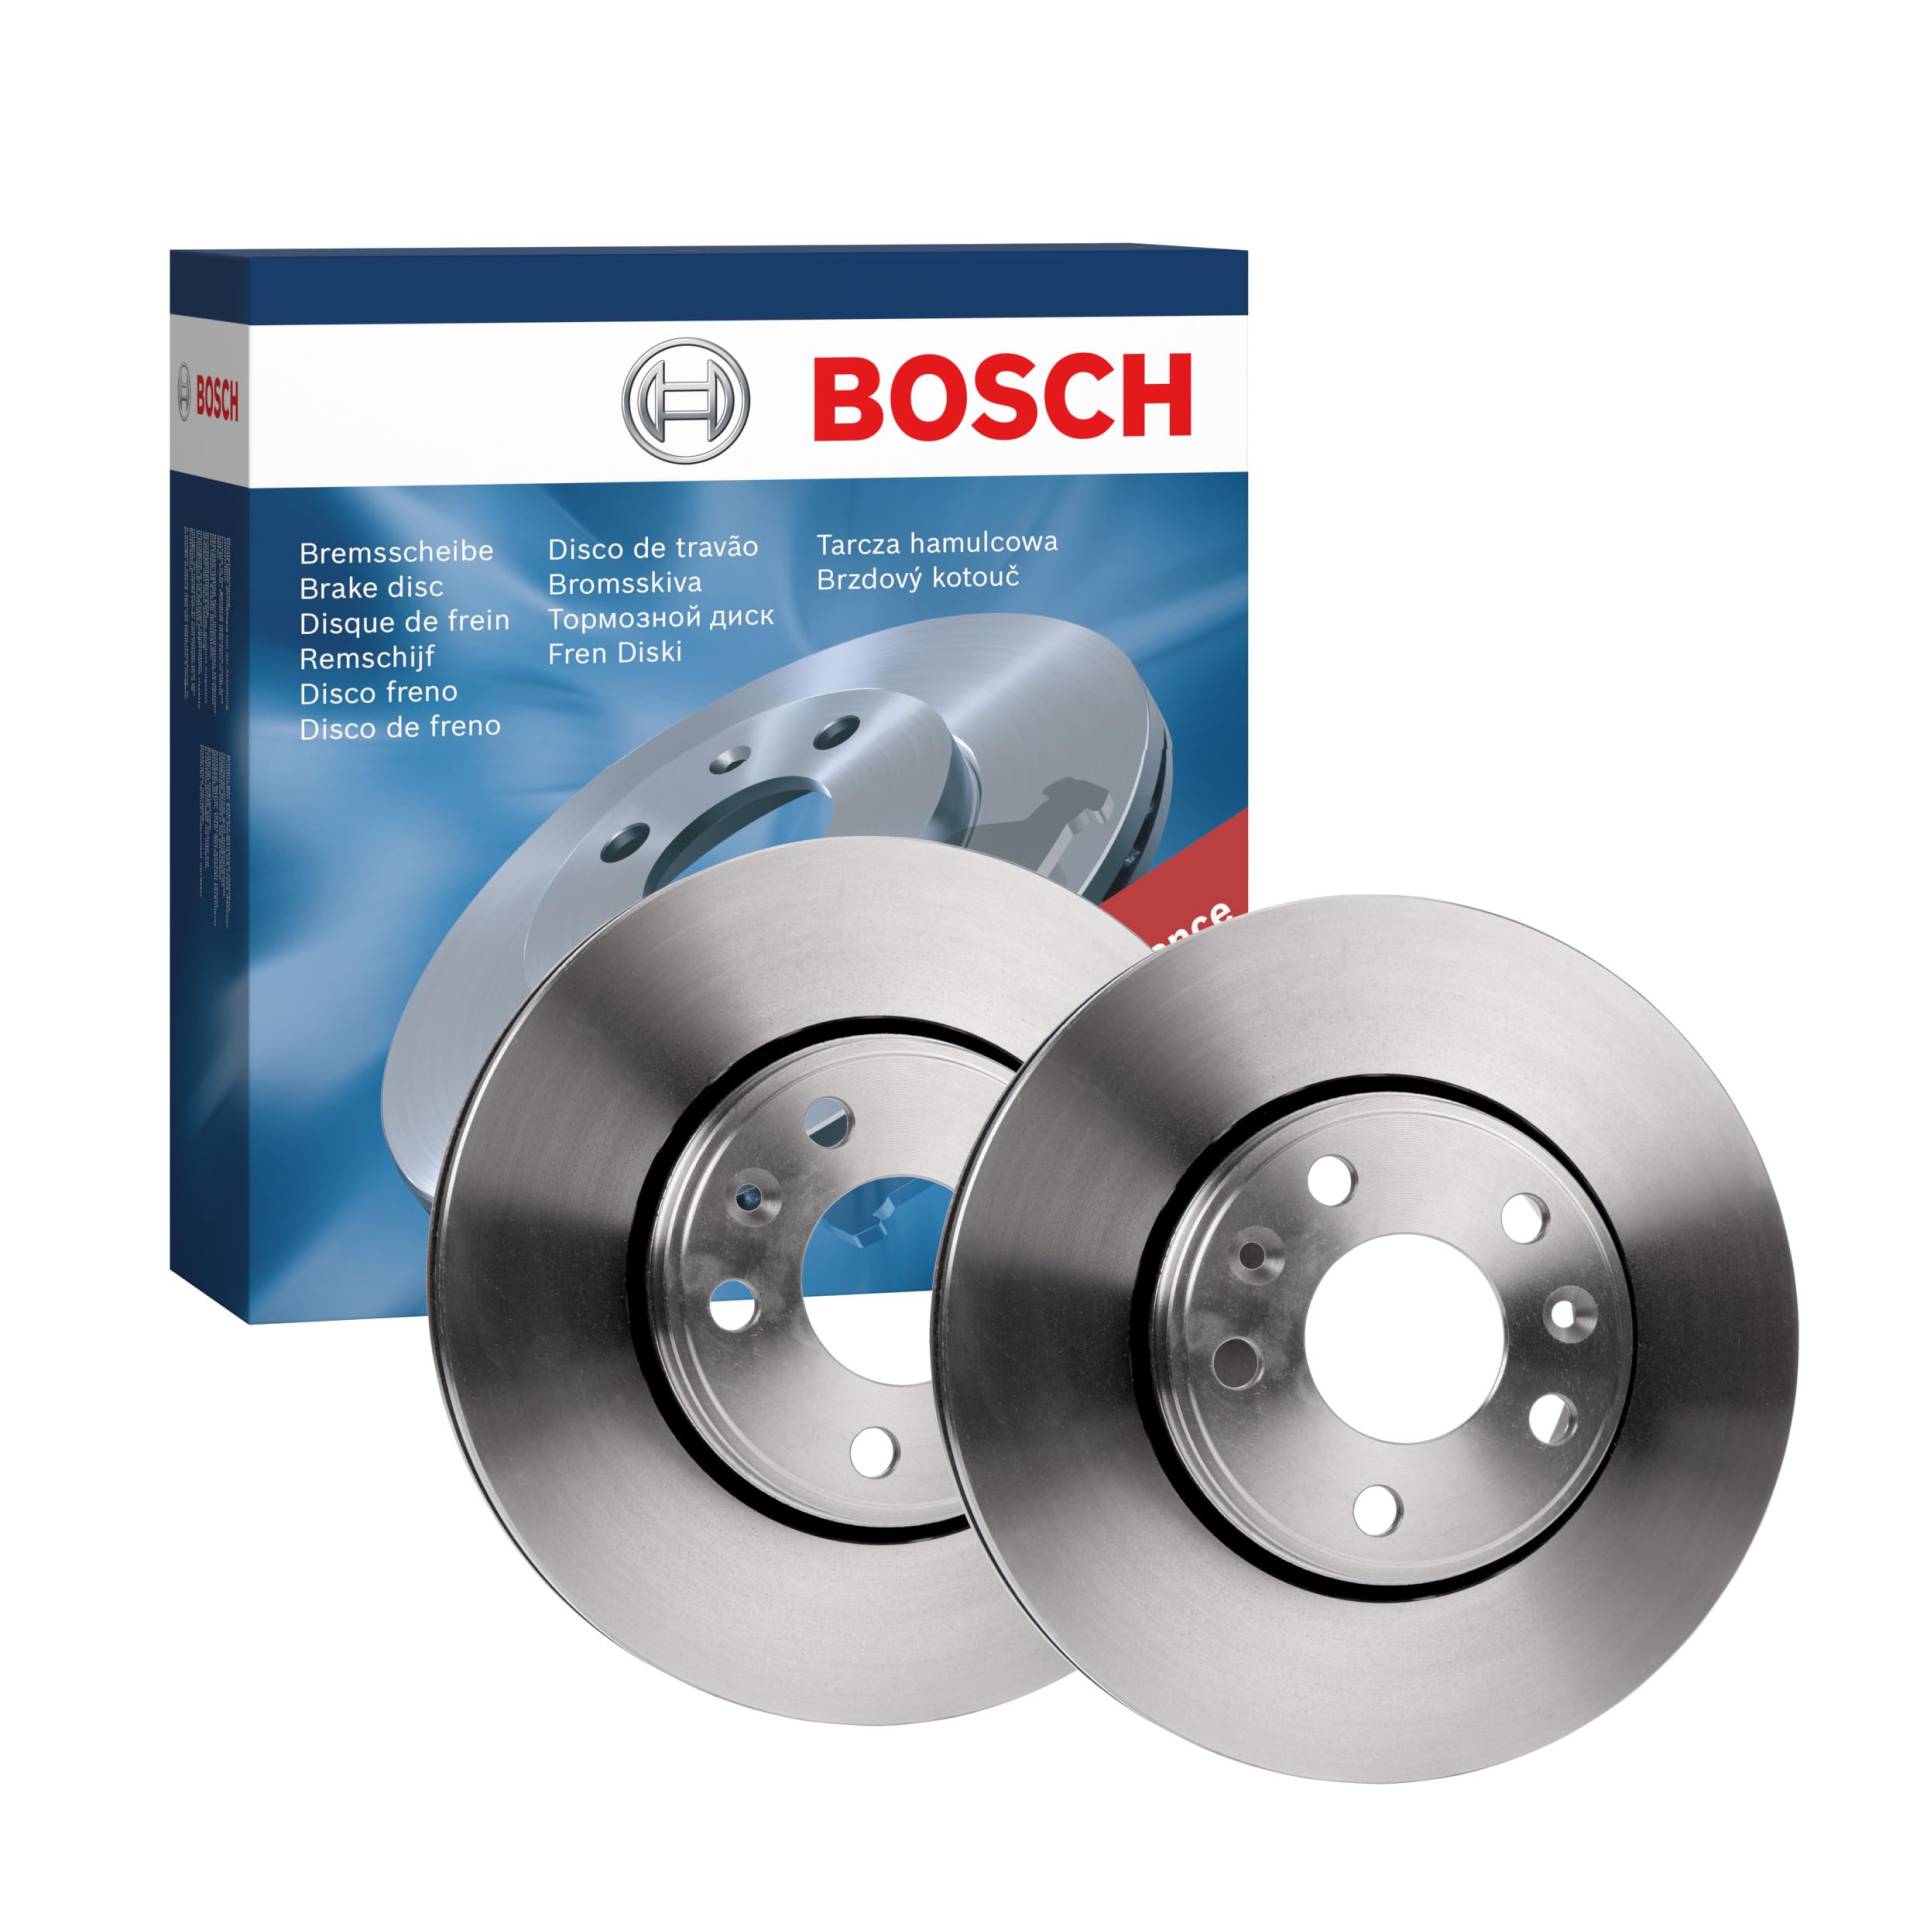 Bosch BD1999 Bremsscheiben - Vorderachse - ECE-R90 Zertifizierung - zwei Bremsscheiben pro Set von Bosch Automotive